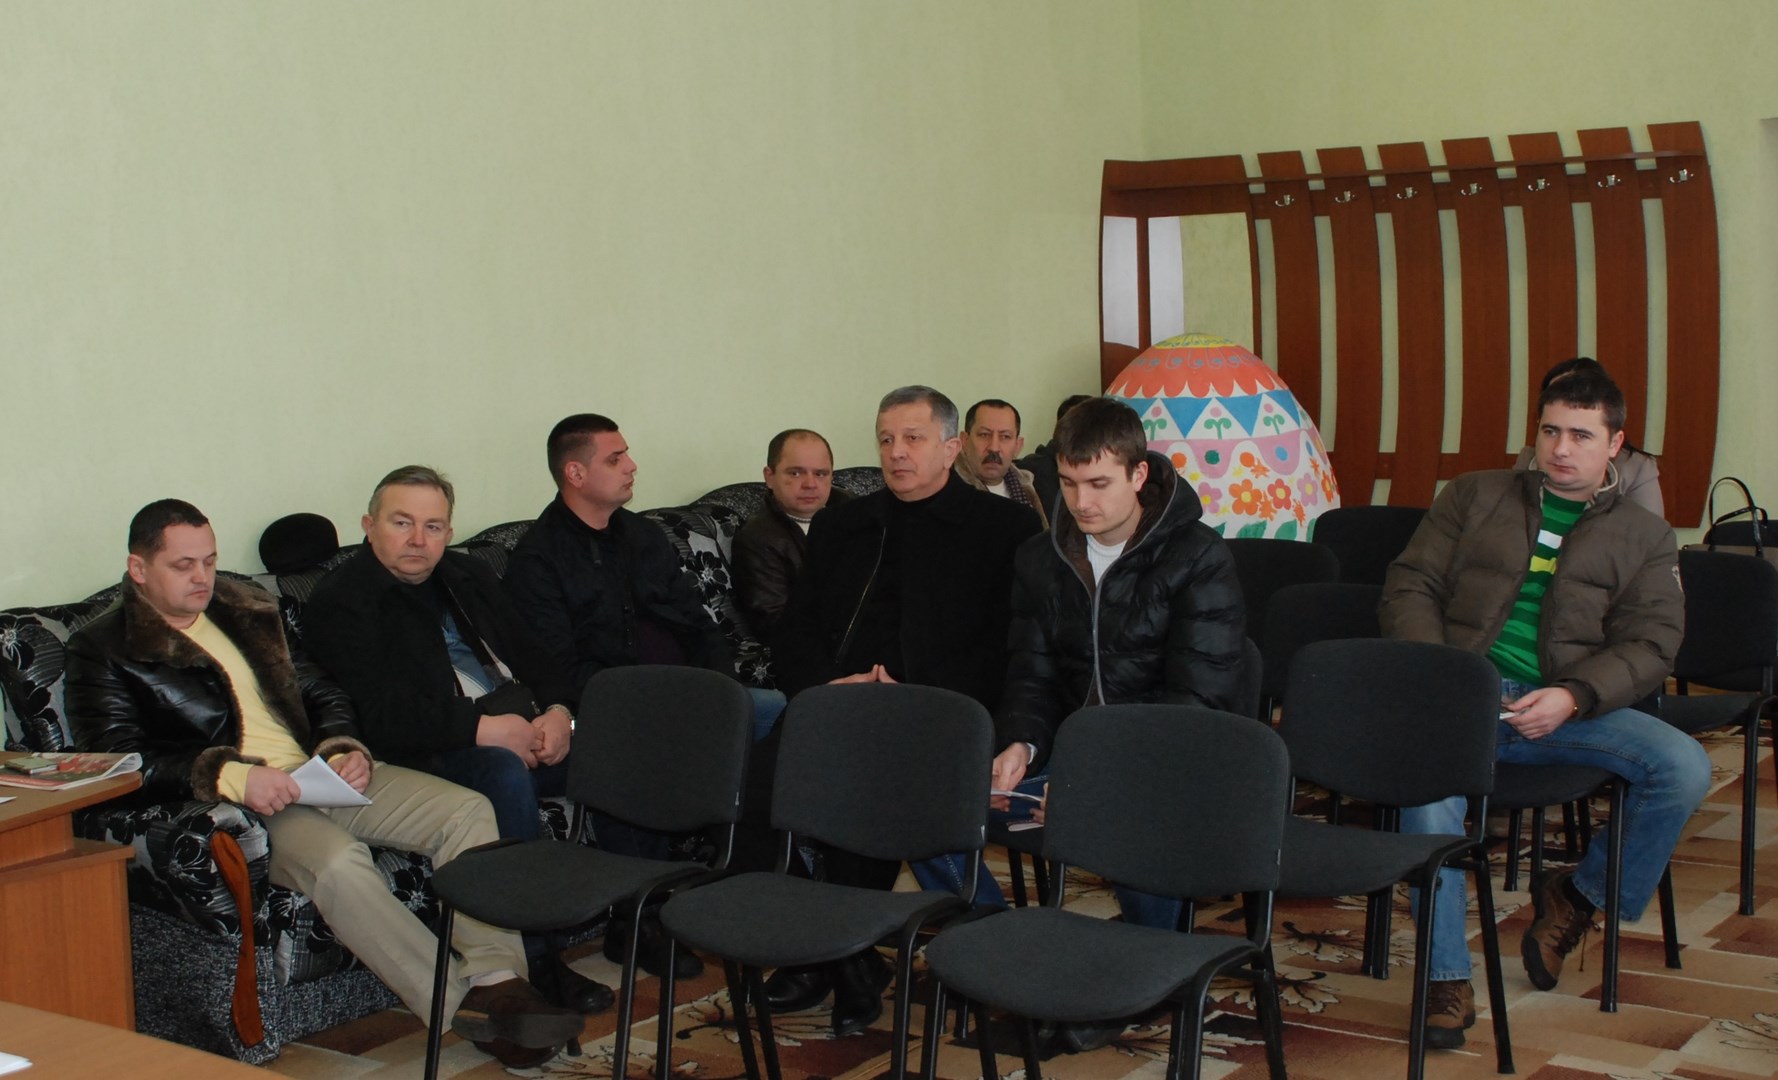 Вчора у залі міської ради мер міста Степан Бобик зібрав місцевих підприємців, бізнесменів, представників різних партій та ЗМІ для обговорення бюджетних планів на 2015 рік.